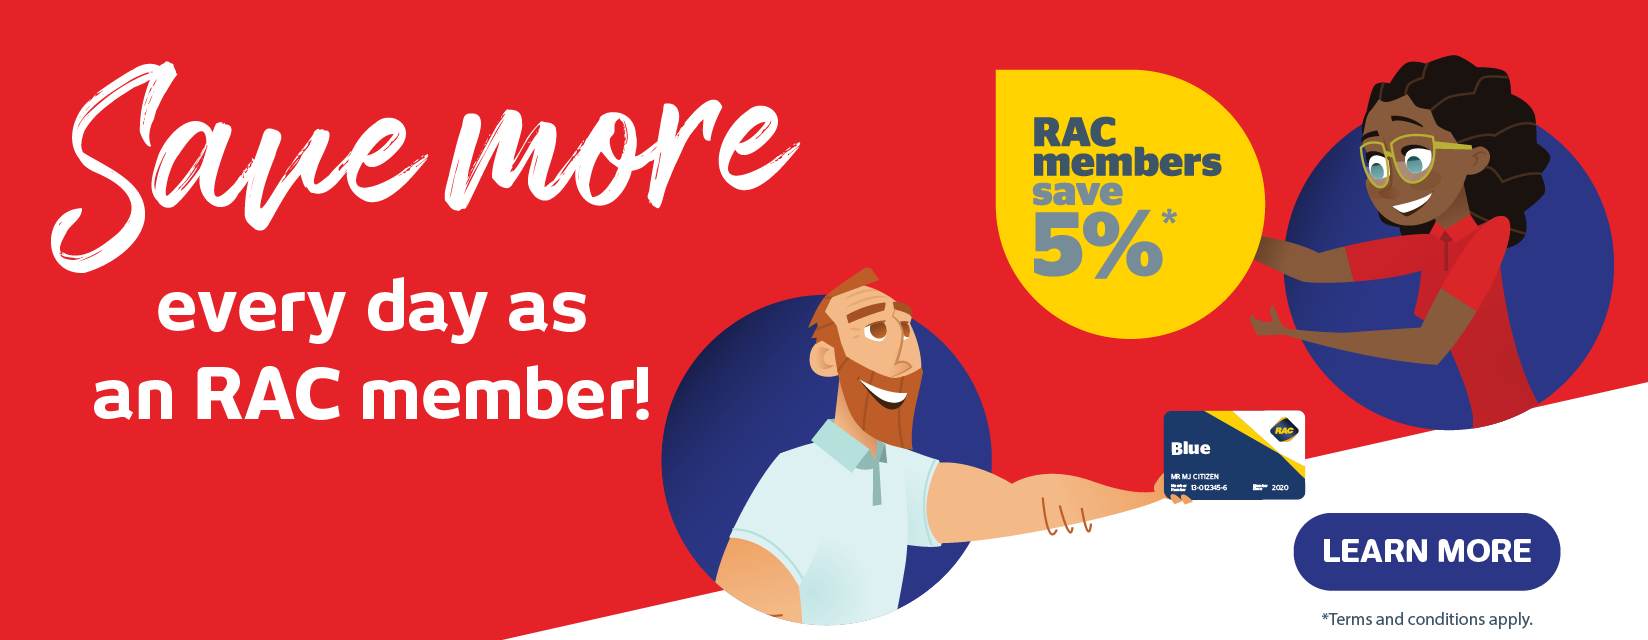 RAC Members Save 5% at Retravision